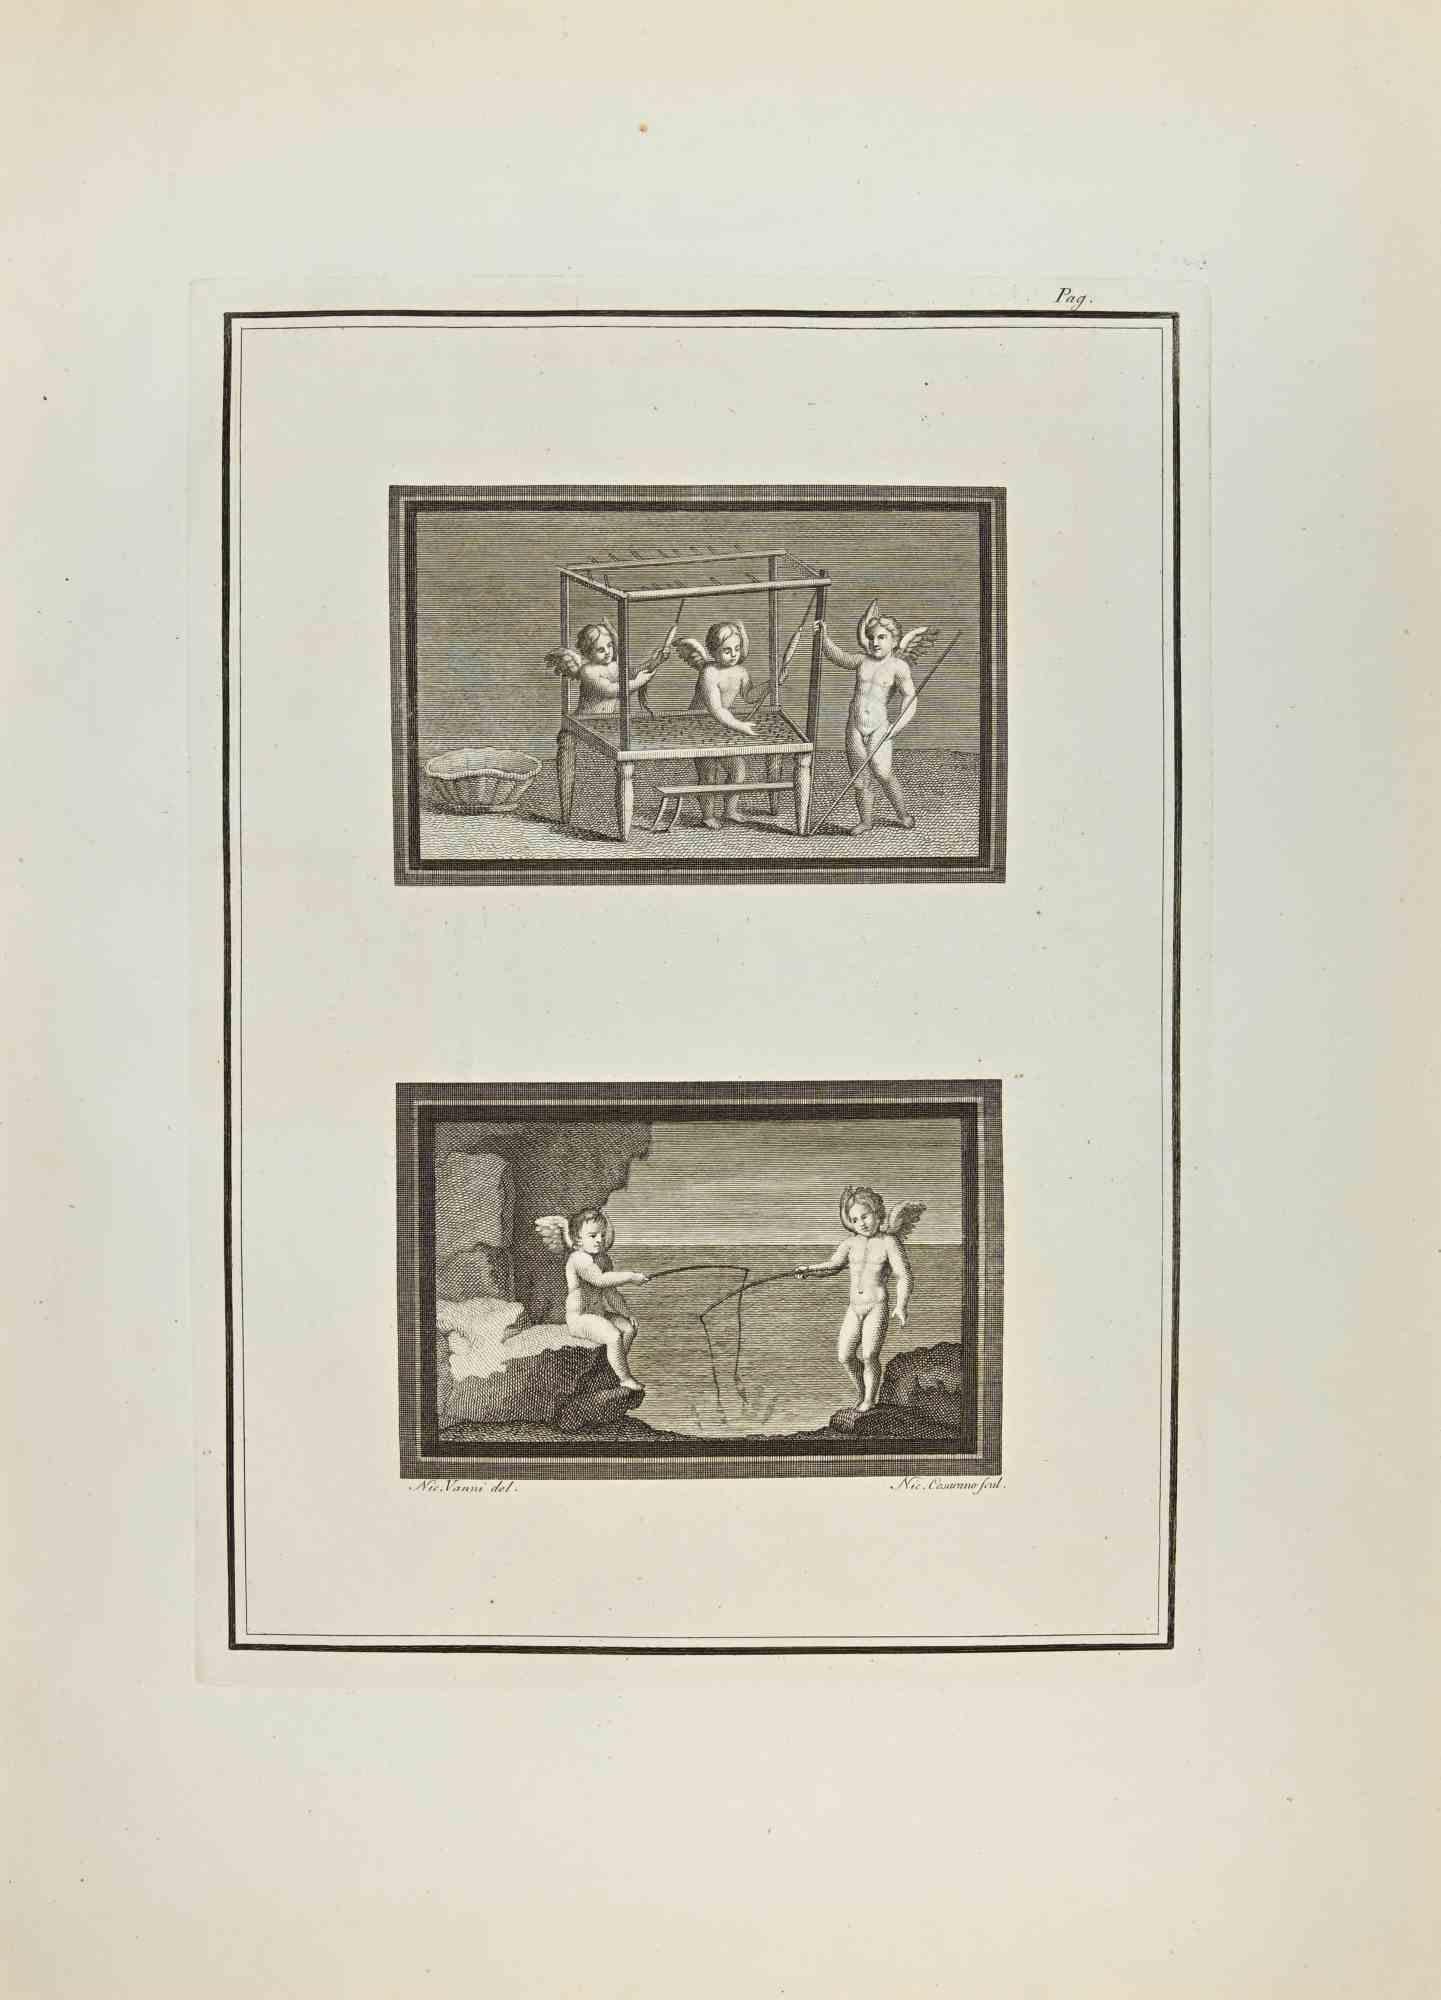 Cupidon et Genny des "Antiquités d'Herculanum" est une gravure sur papier réalisée par Nicola Vanni au 18e siècle.

Signé sur la plaque.

Bon état et vieilli avec quelques pliages.

La gravure appartient à la suite d'estampes "Antiquités